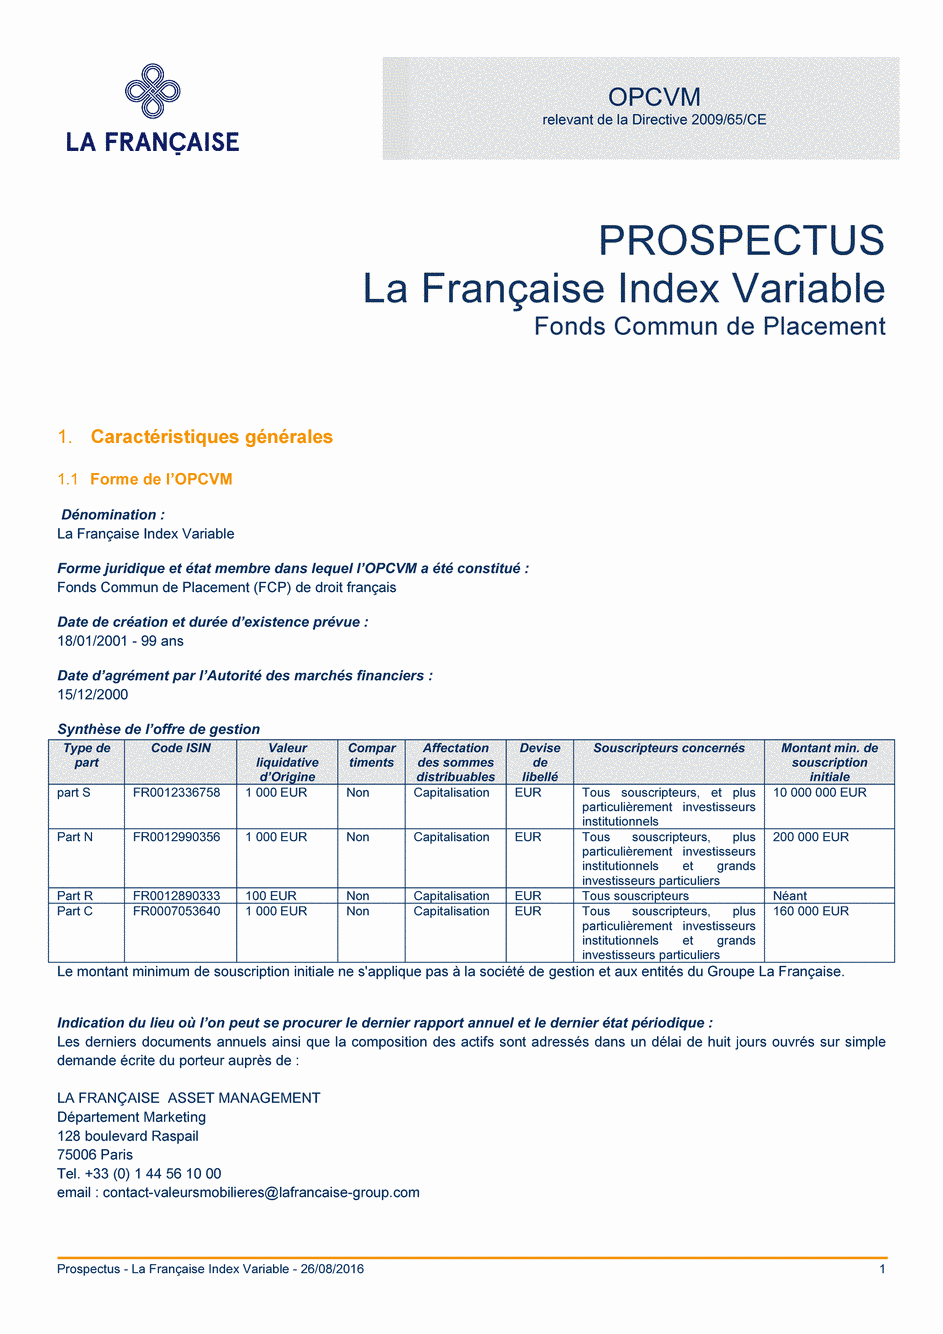 Prospectus La Française Moderate Multibonds - Part S - 26/08/2016 - Français